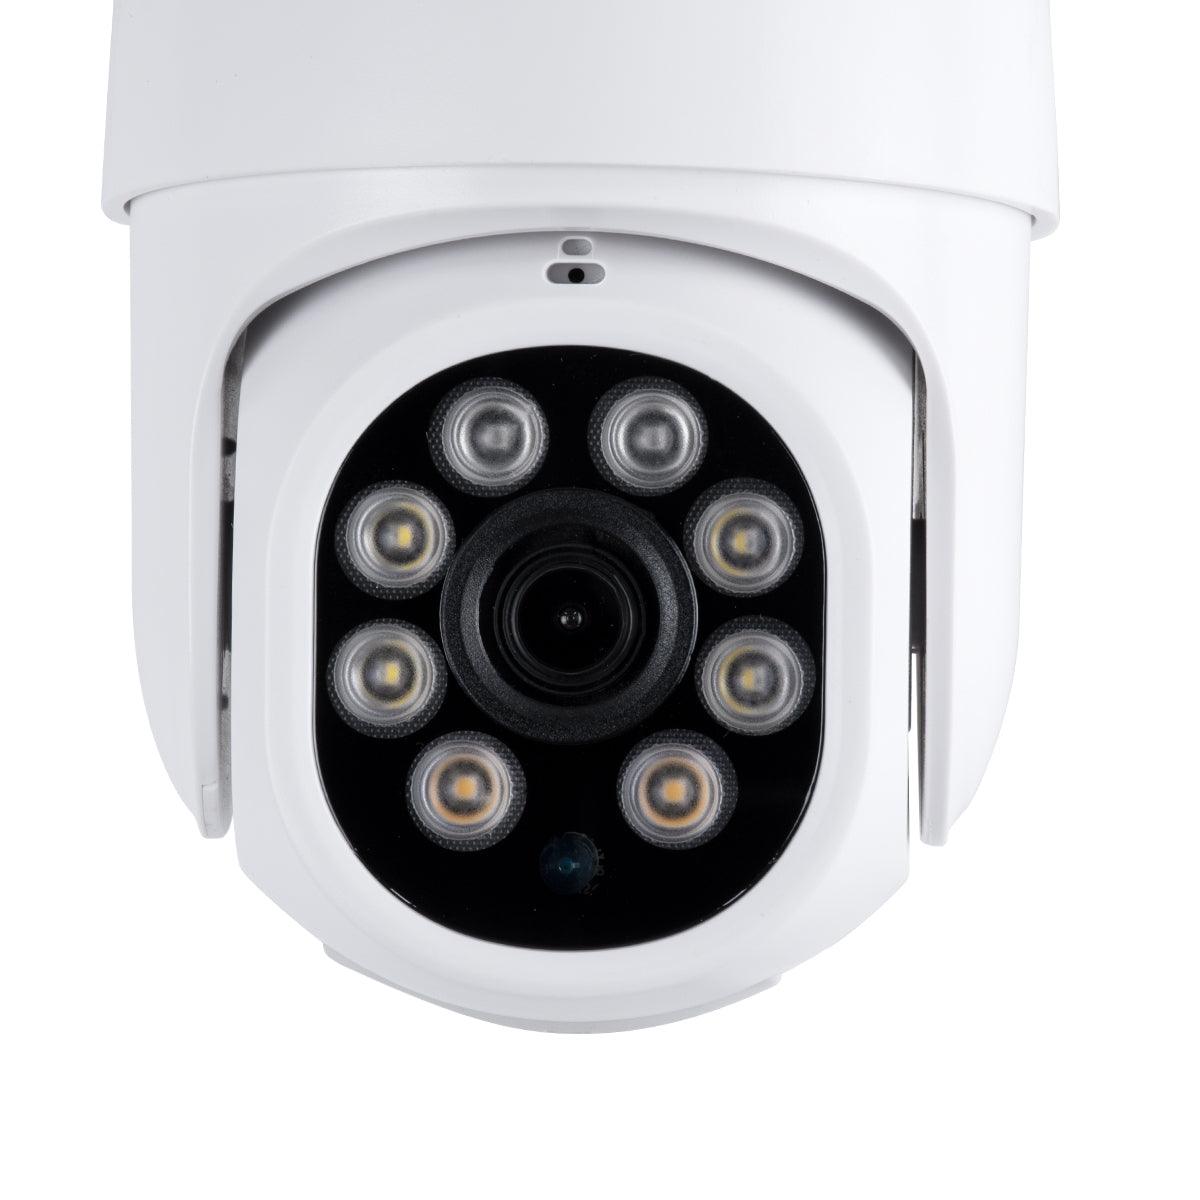 GloboStar® 86040 Ασύρματο Καταγραφικό με 8 x Camera 2MP 1080P WiFi 360° Μοιρών - Αδιάβροχο IP66 - Νυχτερινή Όραση με LED IR - Διπλή Κατέυθυνση Ομιλίας - Ανιχνευτή Κίνησης - Νυχτερινή Λήψη - Λευκό - ledmania.gr